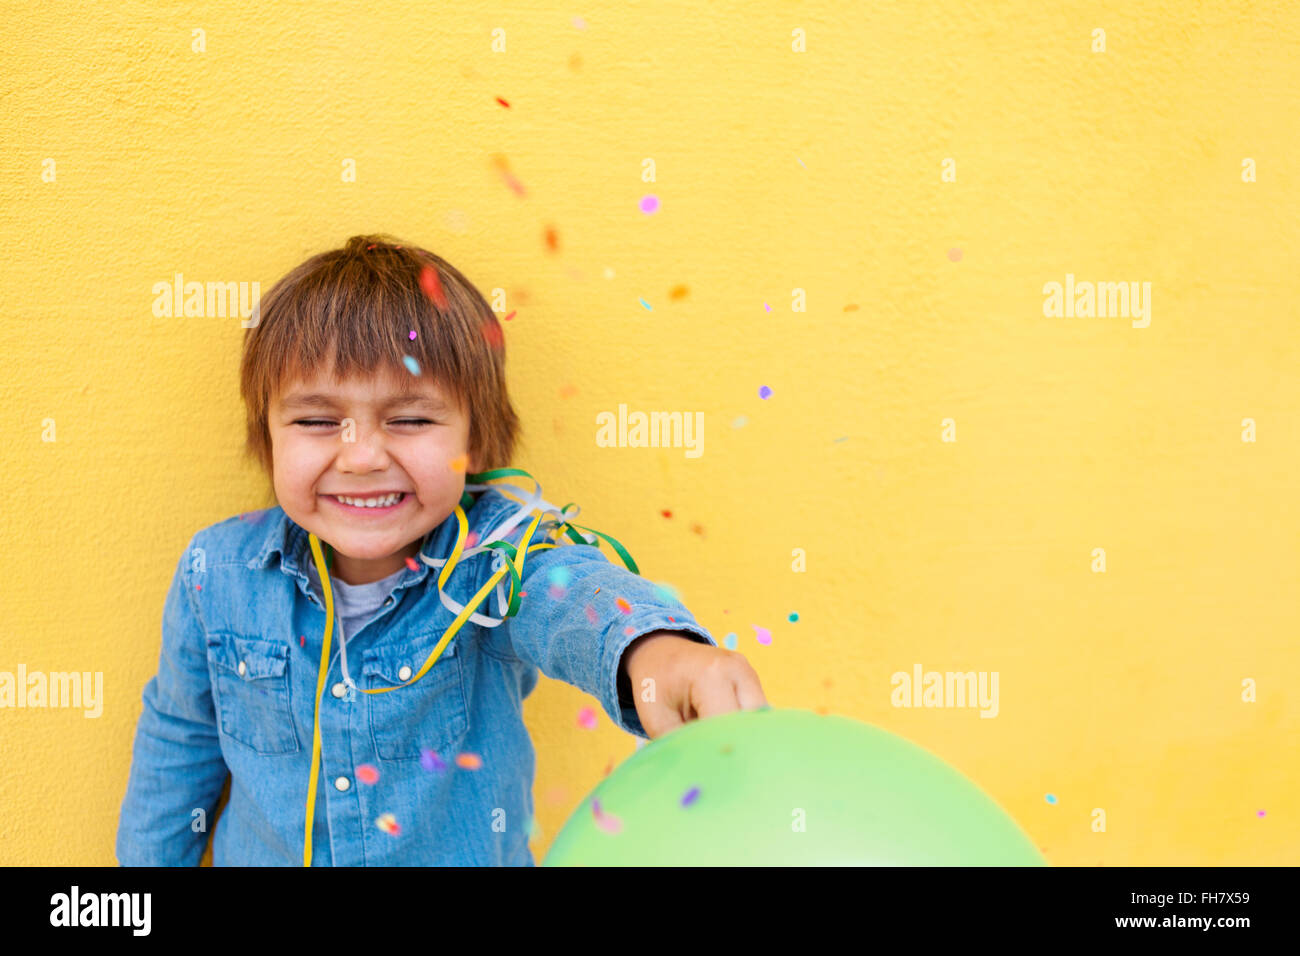 Sorridente ragazzino con palloncino verde, streamer in piedi nella parte anteriore della parete di colore giallo mentre i confetti la caduta verso il basso Foto Stock